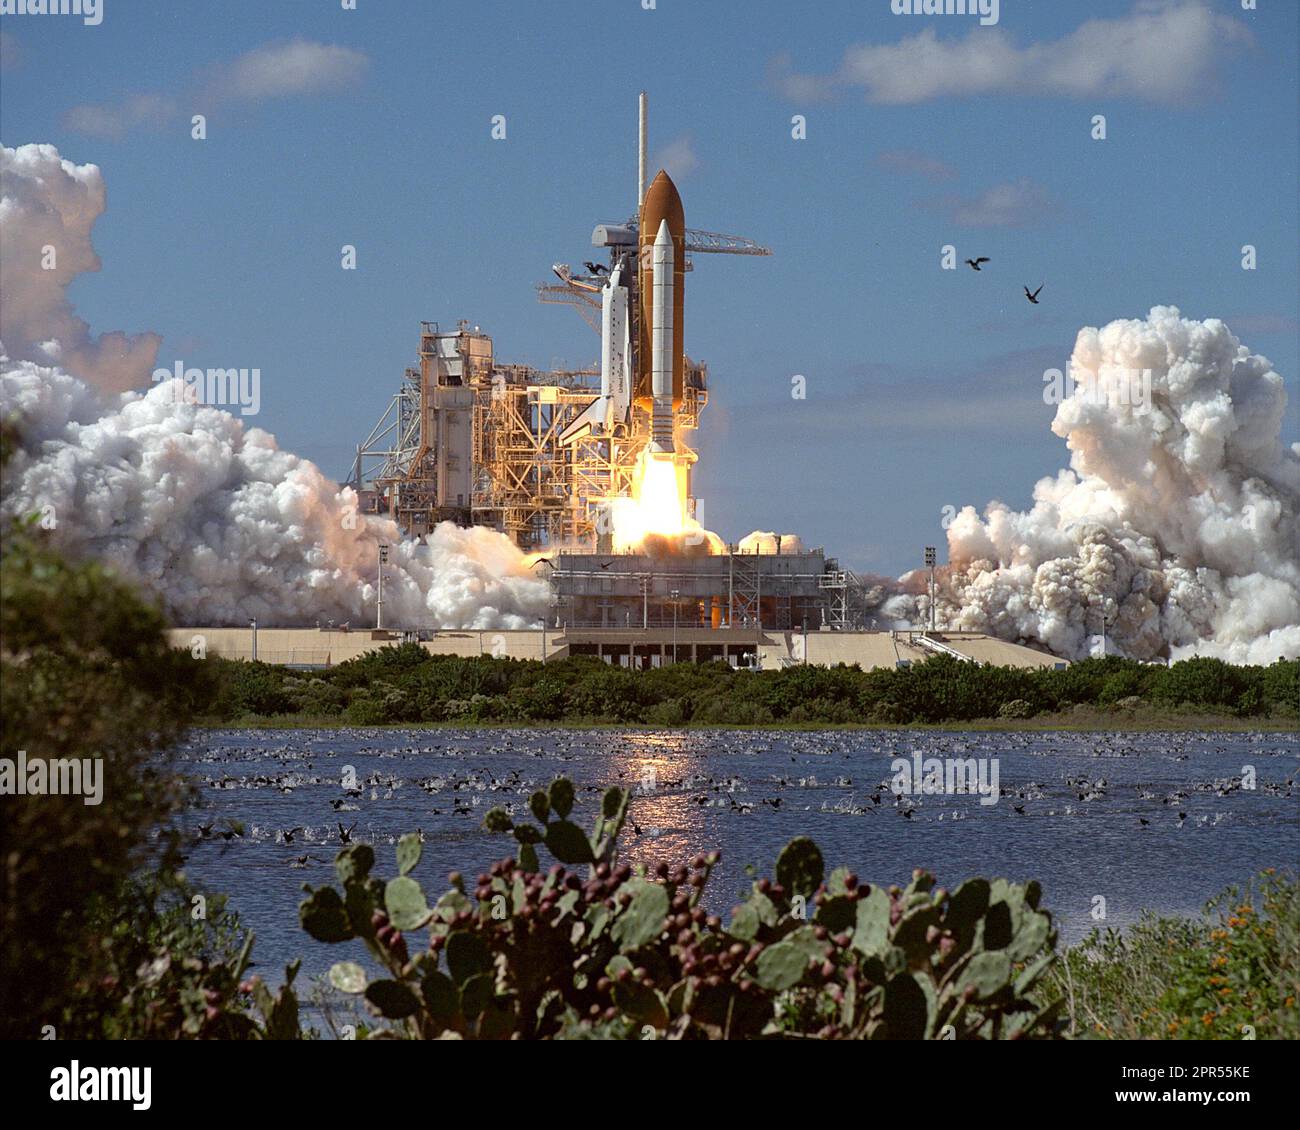 Hunderte von Vögel streuen als die typischen ruhigen Träumerei des Tages werden durch das Brüllen eines Space Shuttle aus dem Pad wogenden vorübergehend unterbrochen. Der Orbiter Atlantis kehrte nach Raum nach einer ca. zweijährigen Abwesenheit mit einem abheben aus Launch Pad 39 b am 11:59:43 Uhr EST. Die geplante 11-tägigen Flug des Space Shuttle Mission STS-66 weiterhin NASA Mission zum Planetenerde, eine umfassende internationale Zusammenarbeit zu studieren wie Umwelt verändert und wie die Menschen, dass der Wandel beeinflussen. Primäre Nutzlasten für das letzte Shuttle-Flug von 1994 enthalten die atmosphärische Labor Stockfoto